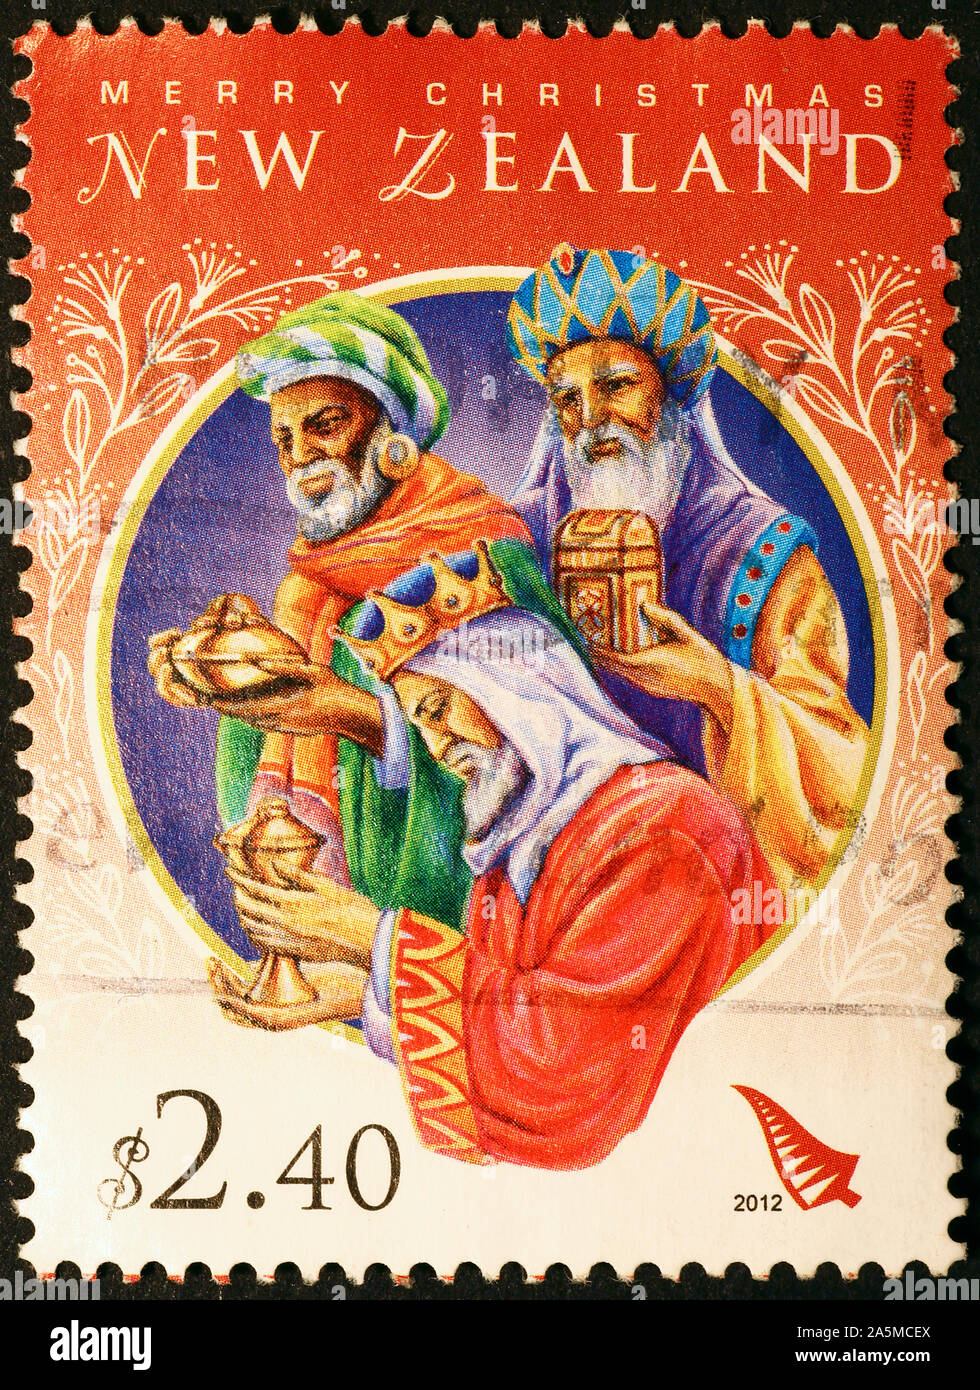 Les trois sages sur New Zealand timbre-poste Banque D'Images